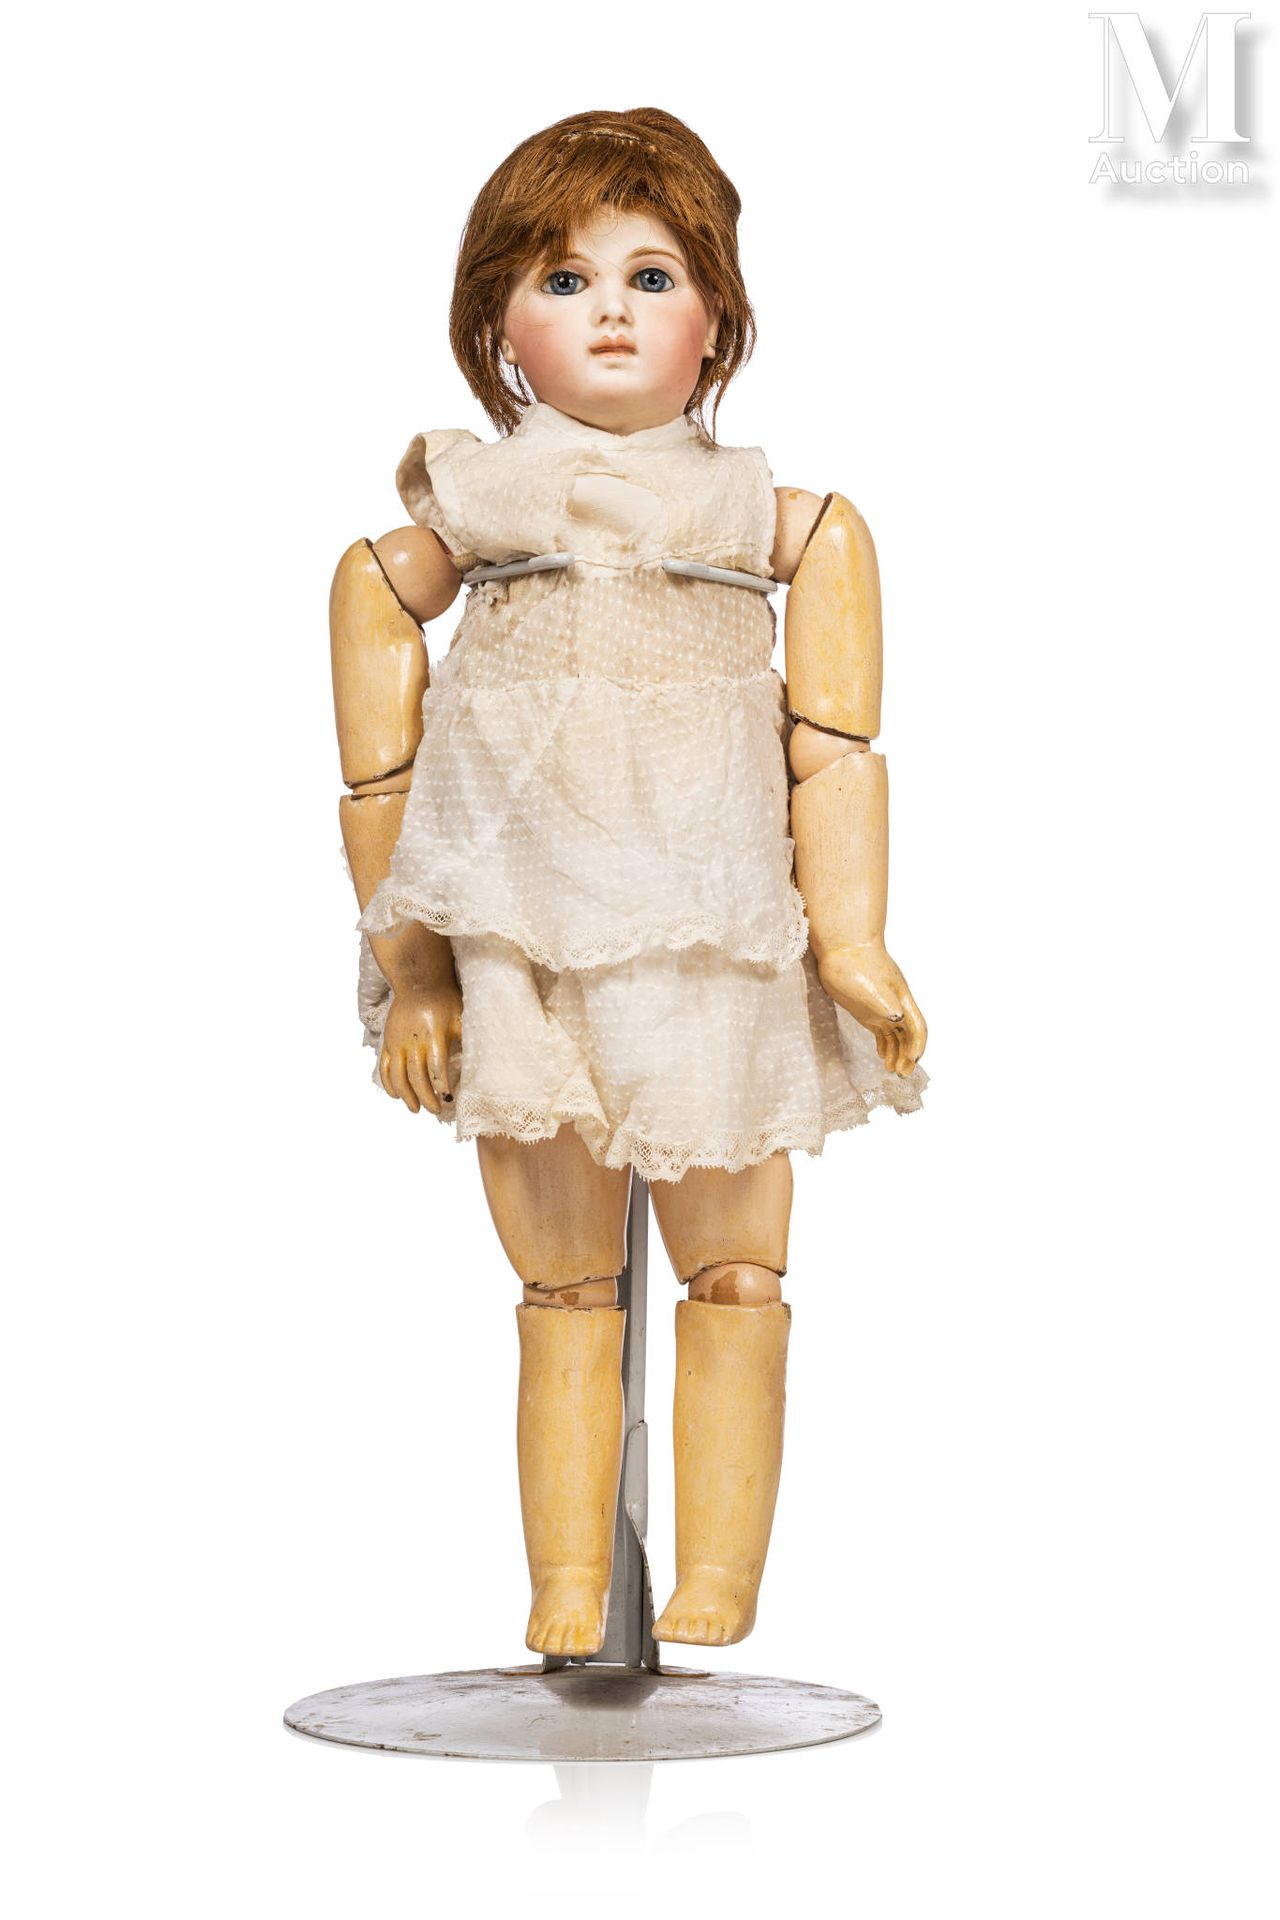 Emile JUMEAU "双一"。

法国娃娃，有压制的饼干头，闭着嘴，固定的蓝眼睛，脖子上有 "L "的标记。Jumeau类型的铰接式身体，球上有蓝色印章的&hellip;